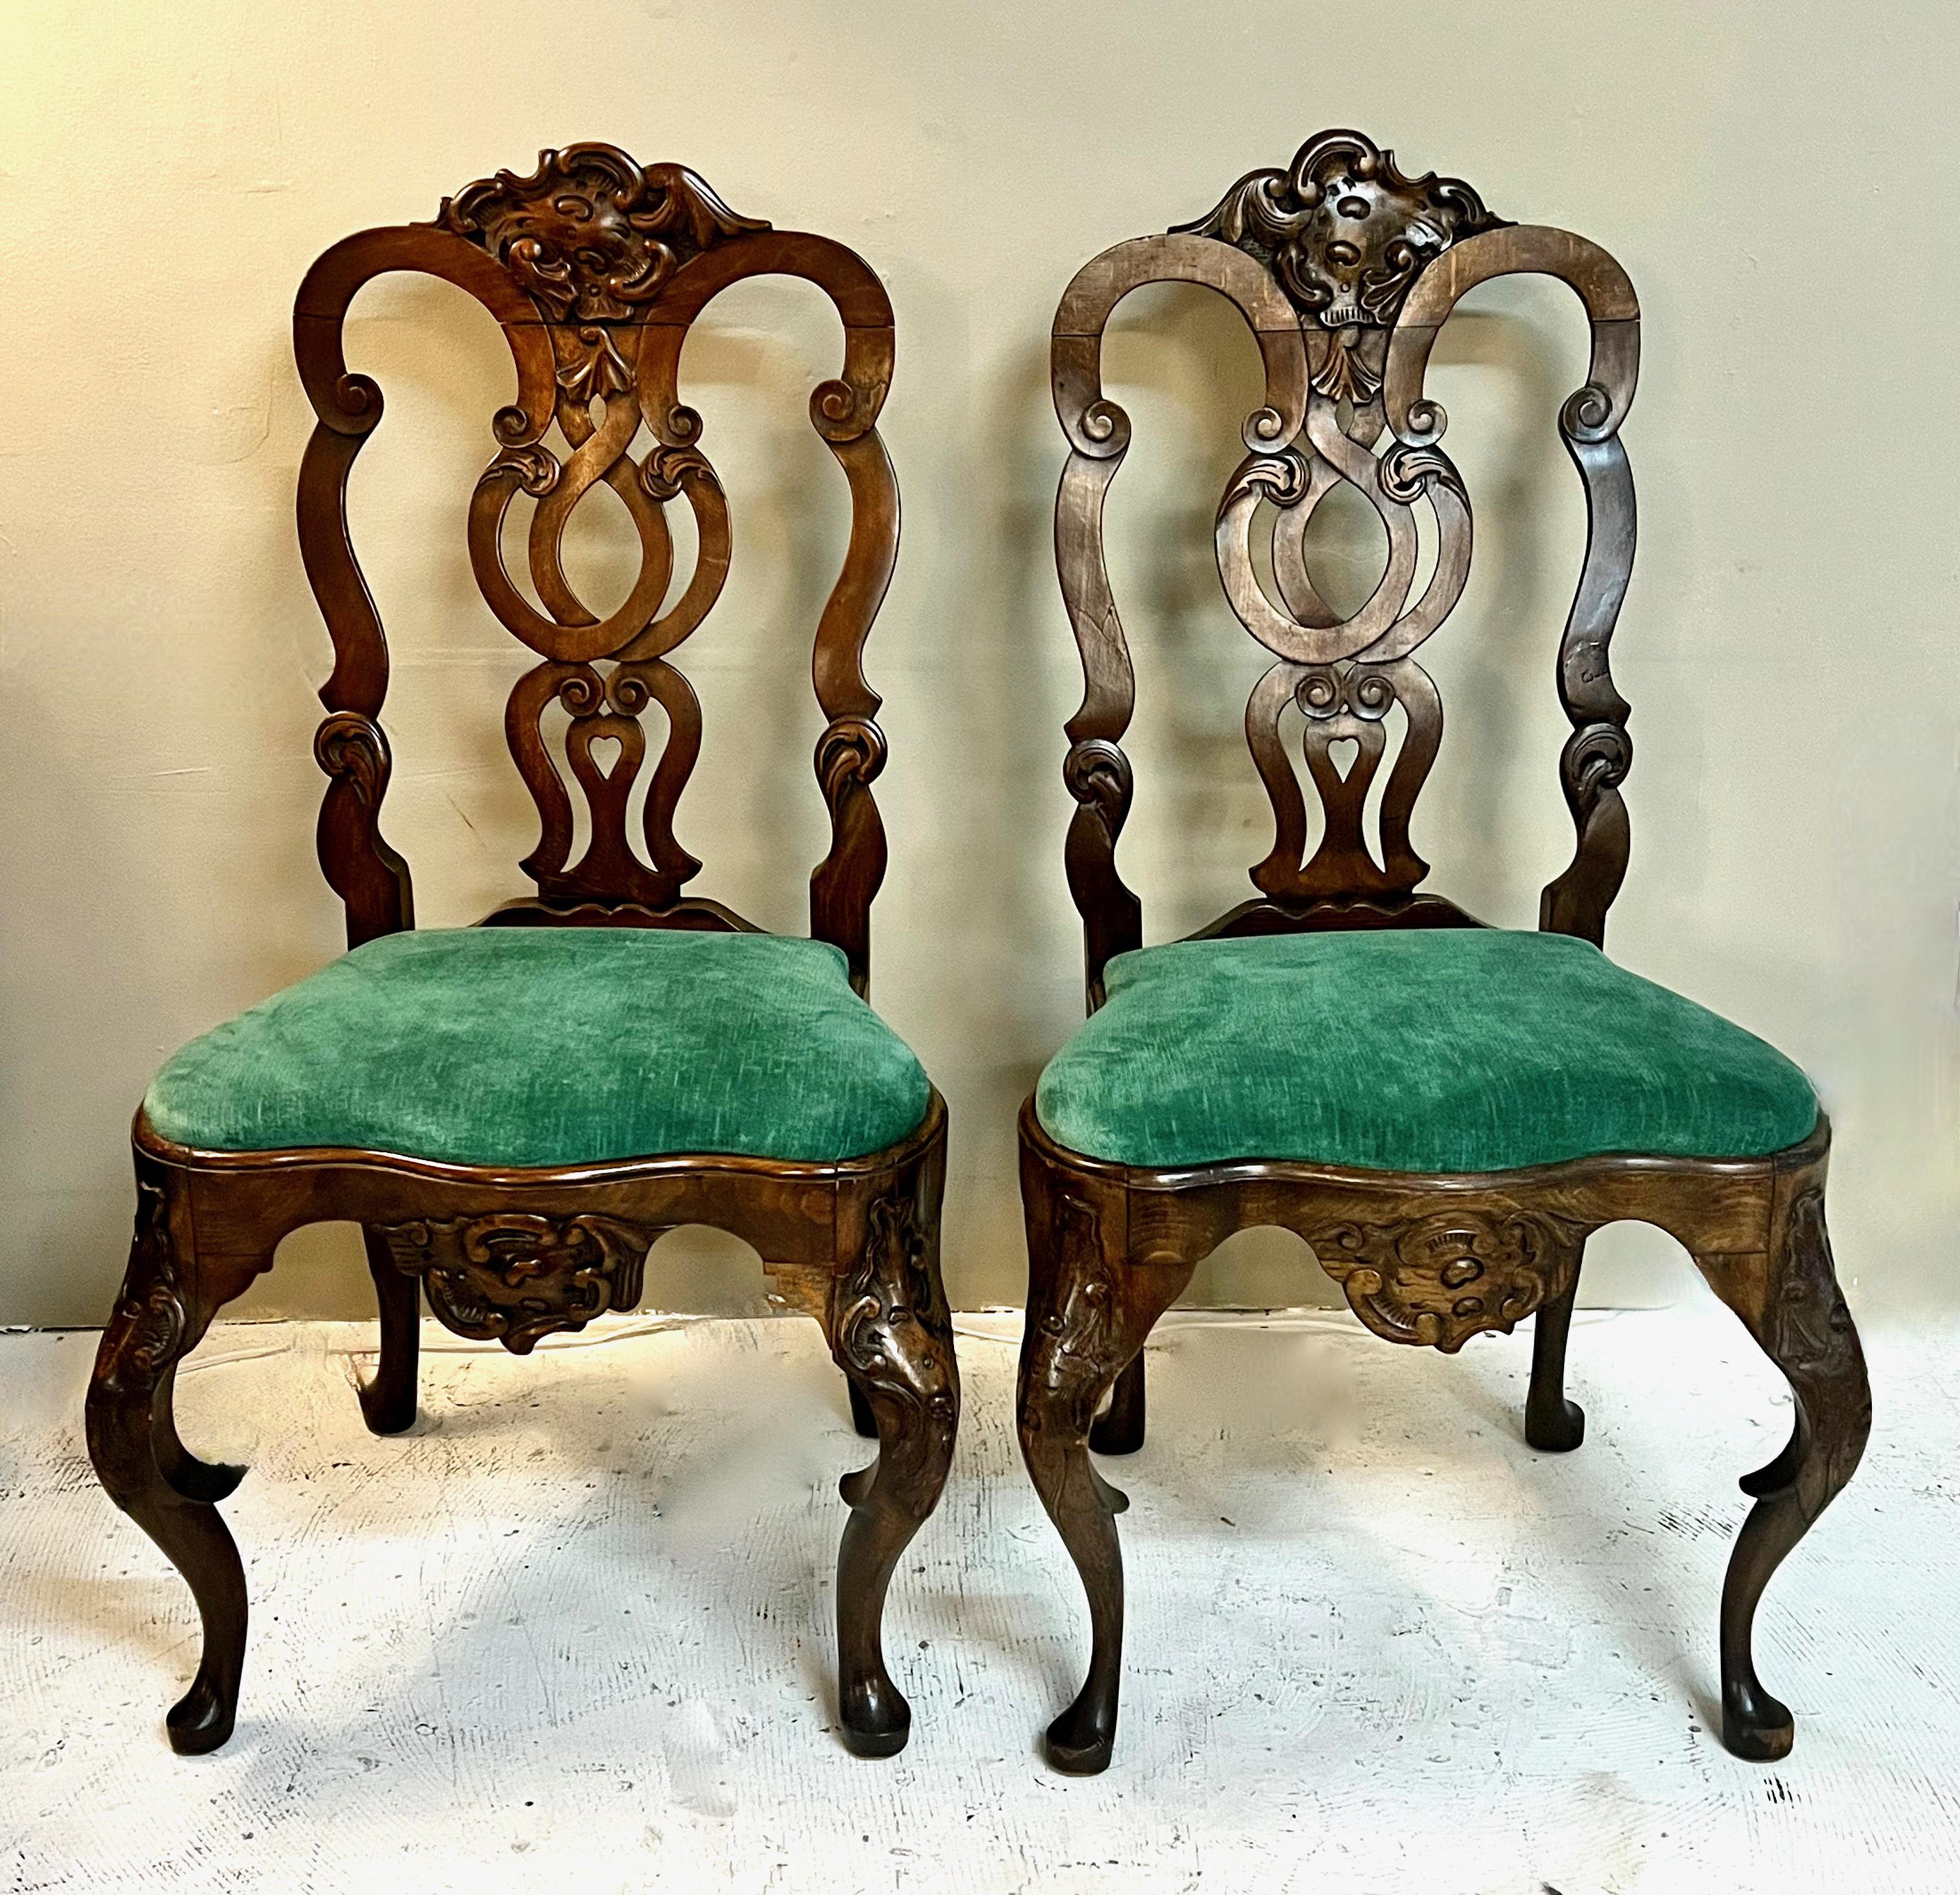 Dies ist ein großes Paar geschnitzte portugiesische Eiche Rokoko Beistelltische. Diese Stühle sind wunderschön geschnitzt mit übertriebenen Cabriole Beine mit geschnitzten Knien, Steigbügel und pad Füße detailliert. Die mittlere Leiste ist mit ihren